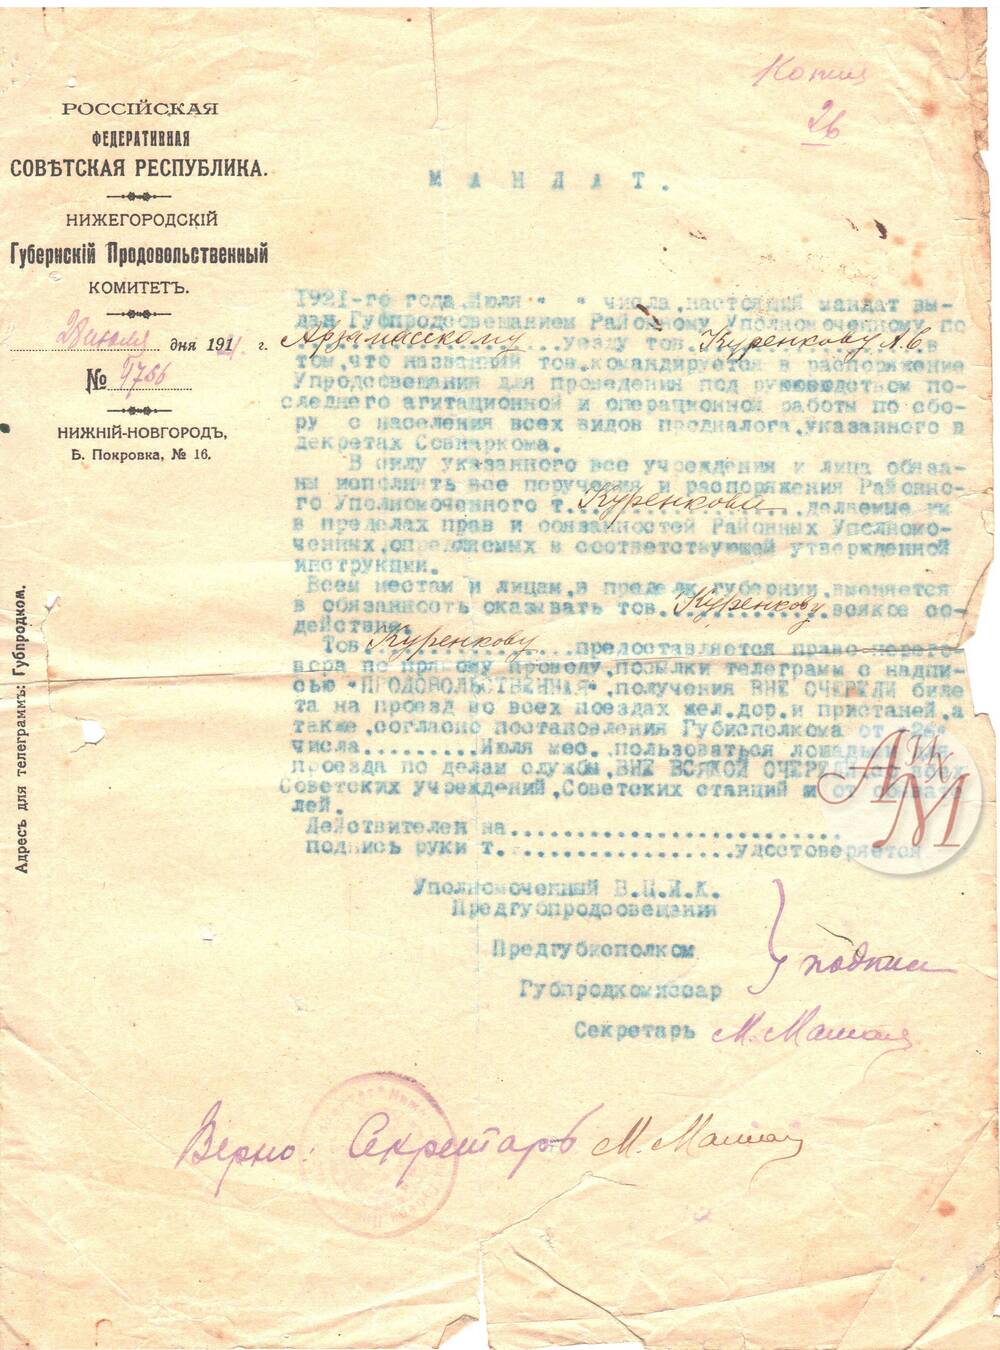 Документ. Мандат № 4766 (копия), выданный Куренкову А.С.